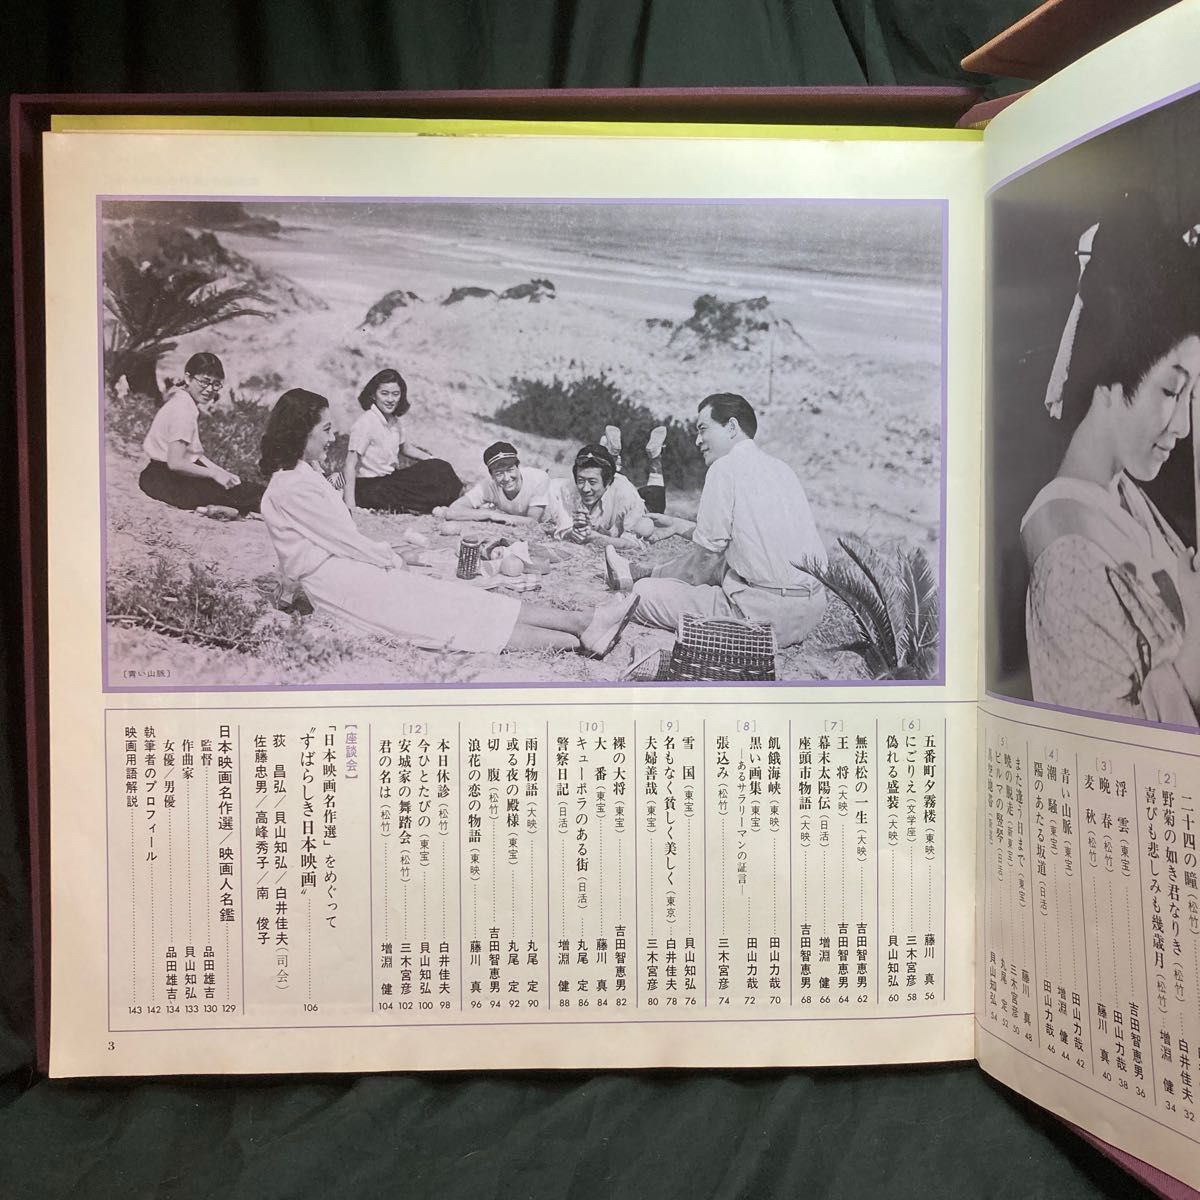 日本映画名作選 リアルサウンドトラック 33 1/3r.p.m モノラル 30cm LP 12枚組 東宝レコード